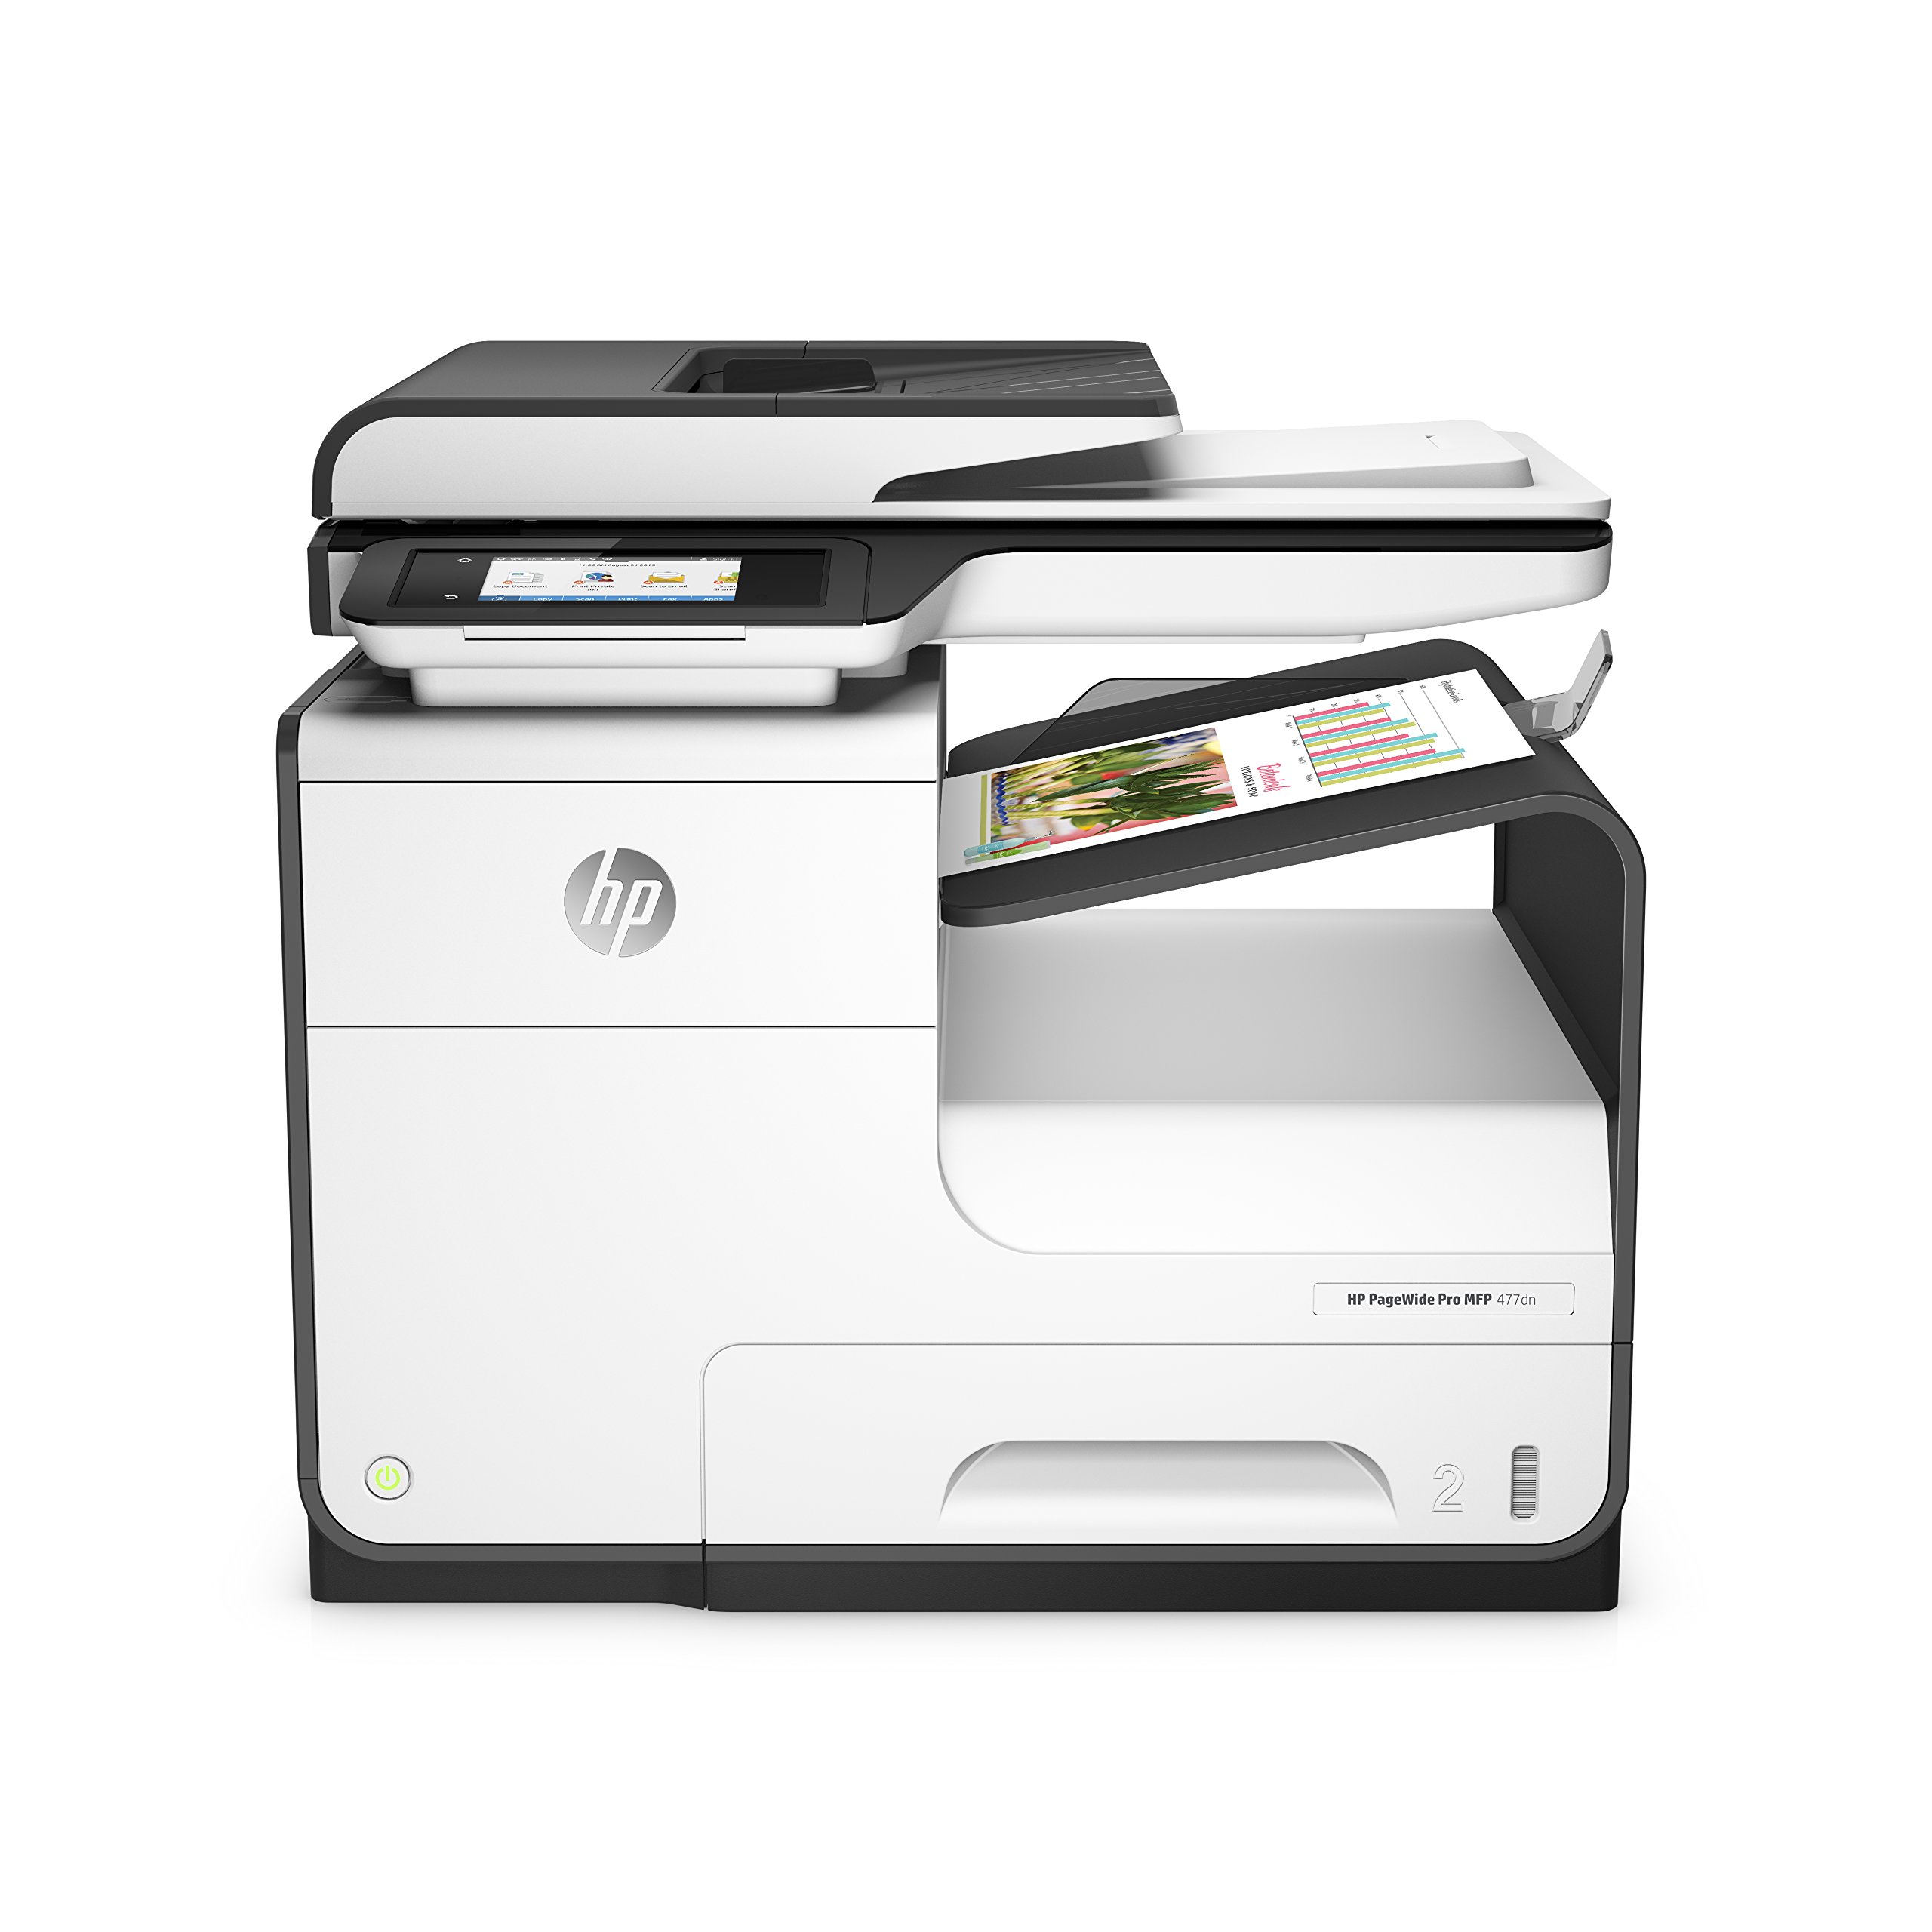 PageWide Pro 577dw Multifunction Printer series